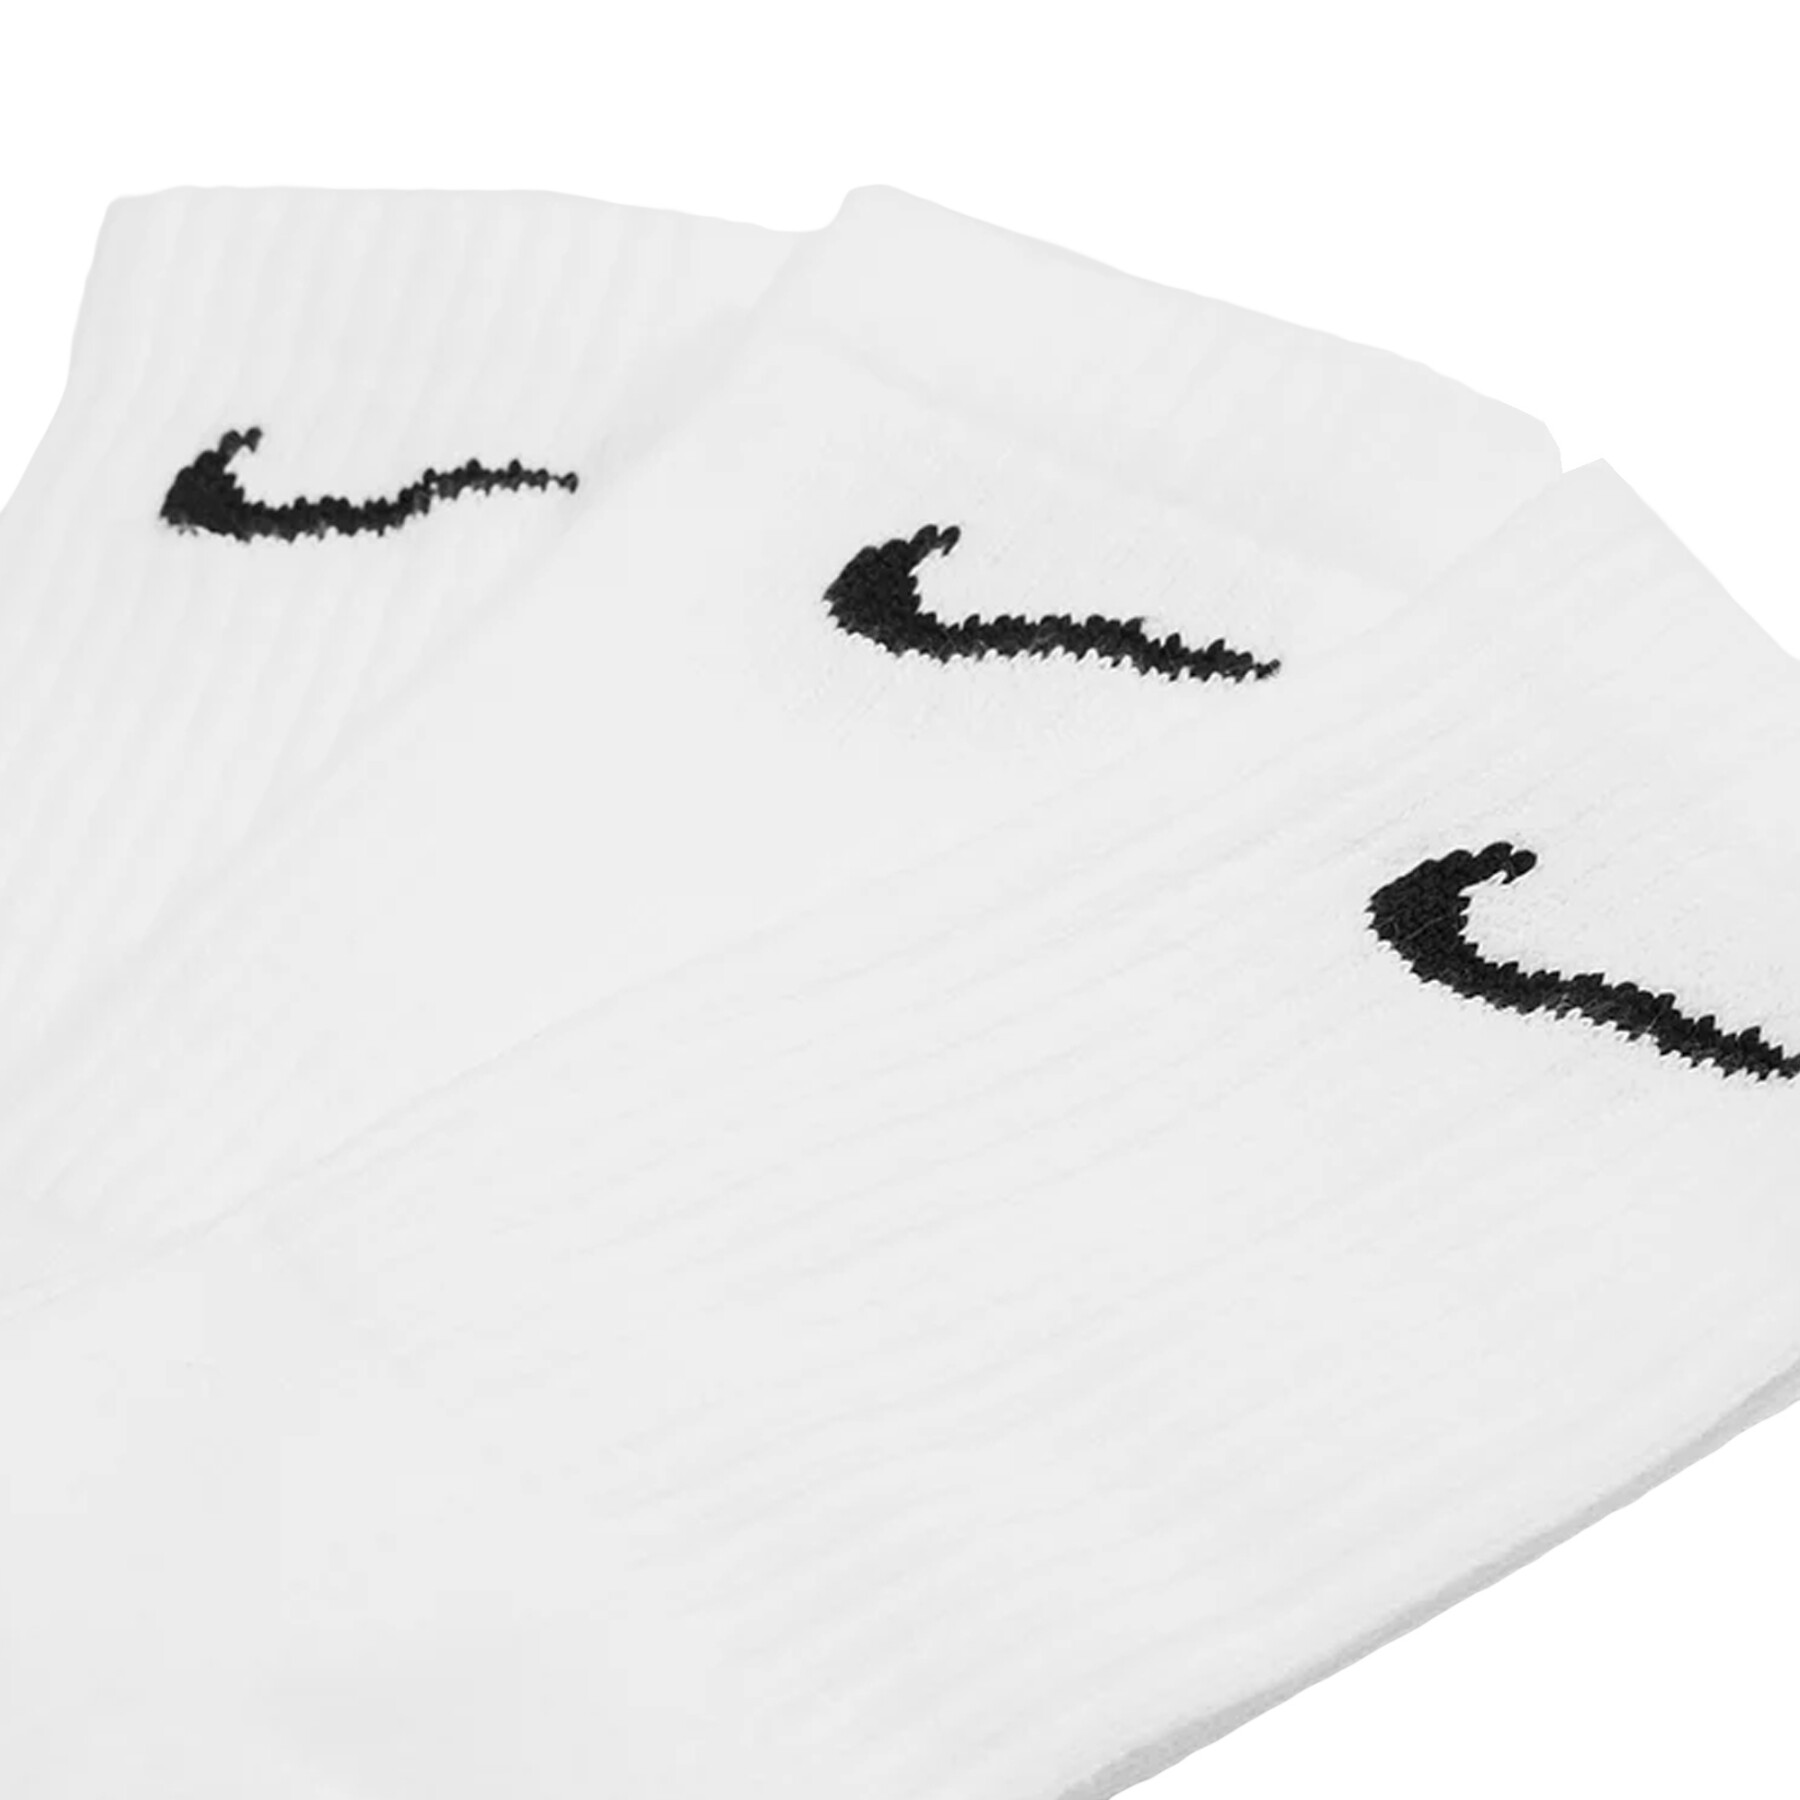 Pack of 3 children's socks Nike Basic